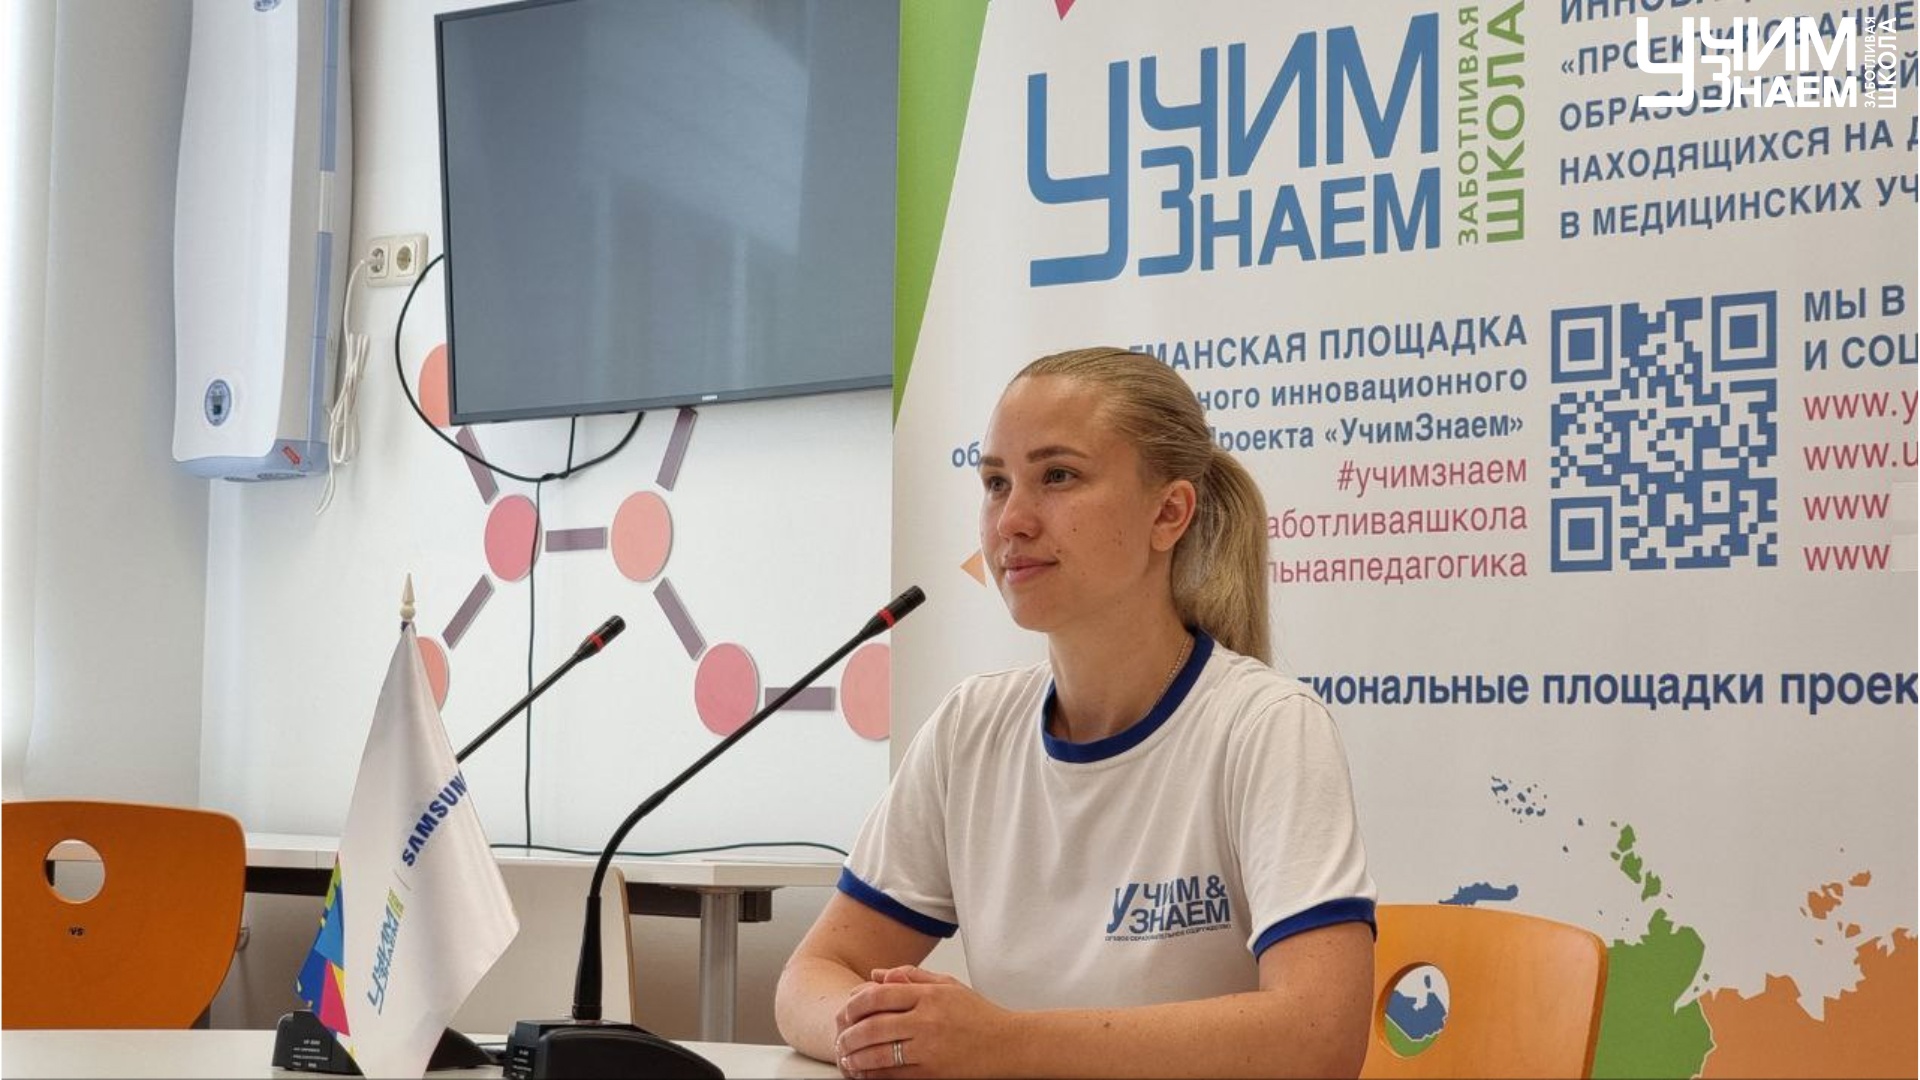 Сегодня в Ижевске в рамках детских инклюзивных творческих игр состоялась Международная научно-практическая конференция